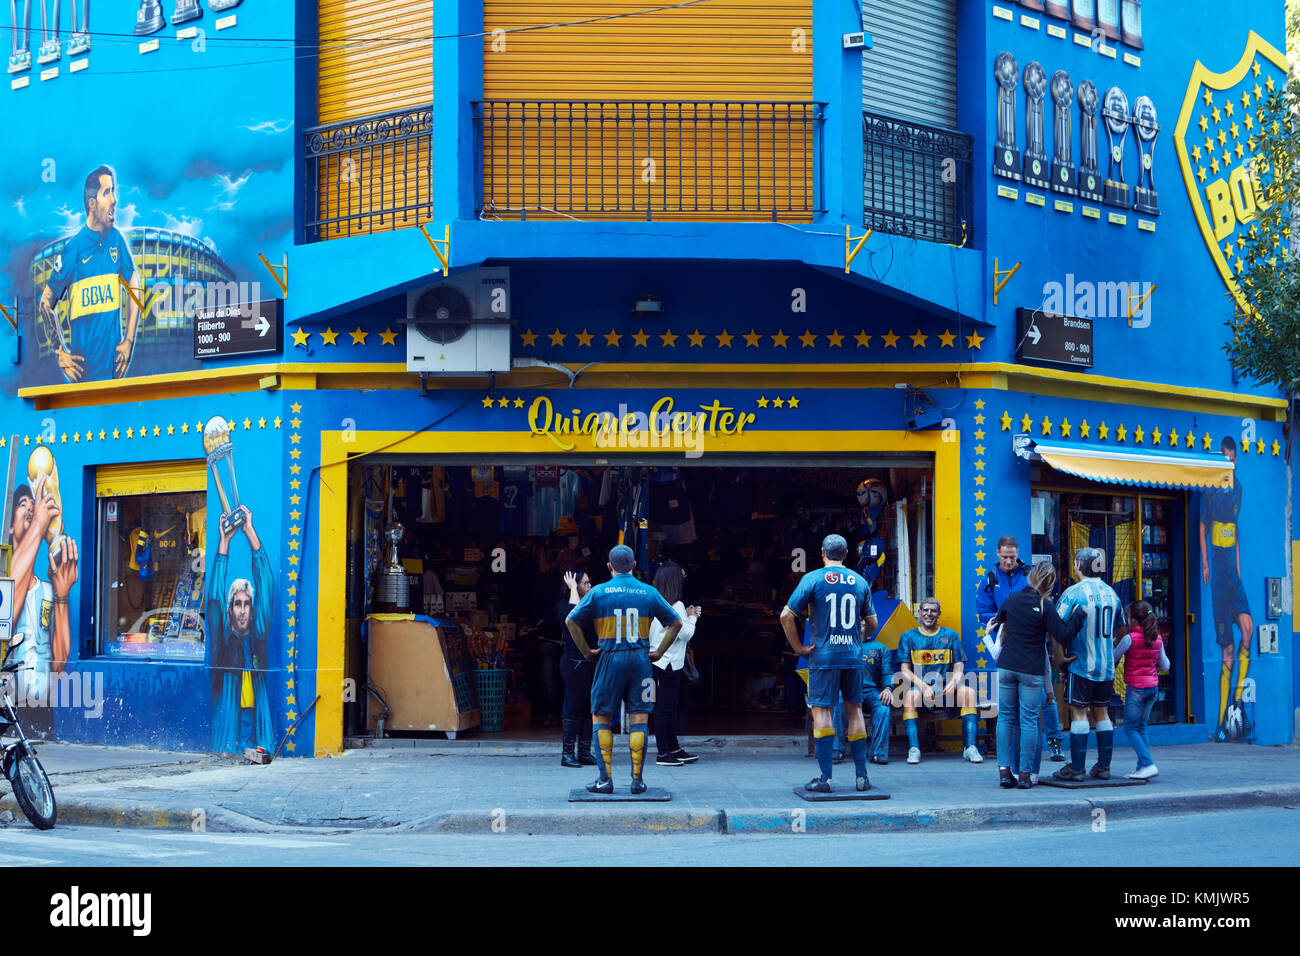 Boca junior de football shop, la Boca, Buenos Aires, Argentine, Amérique du Sud Banque D'Images